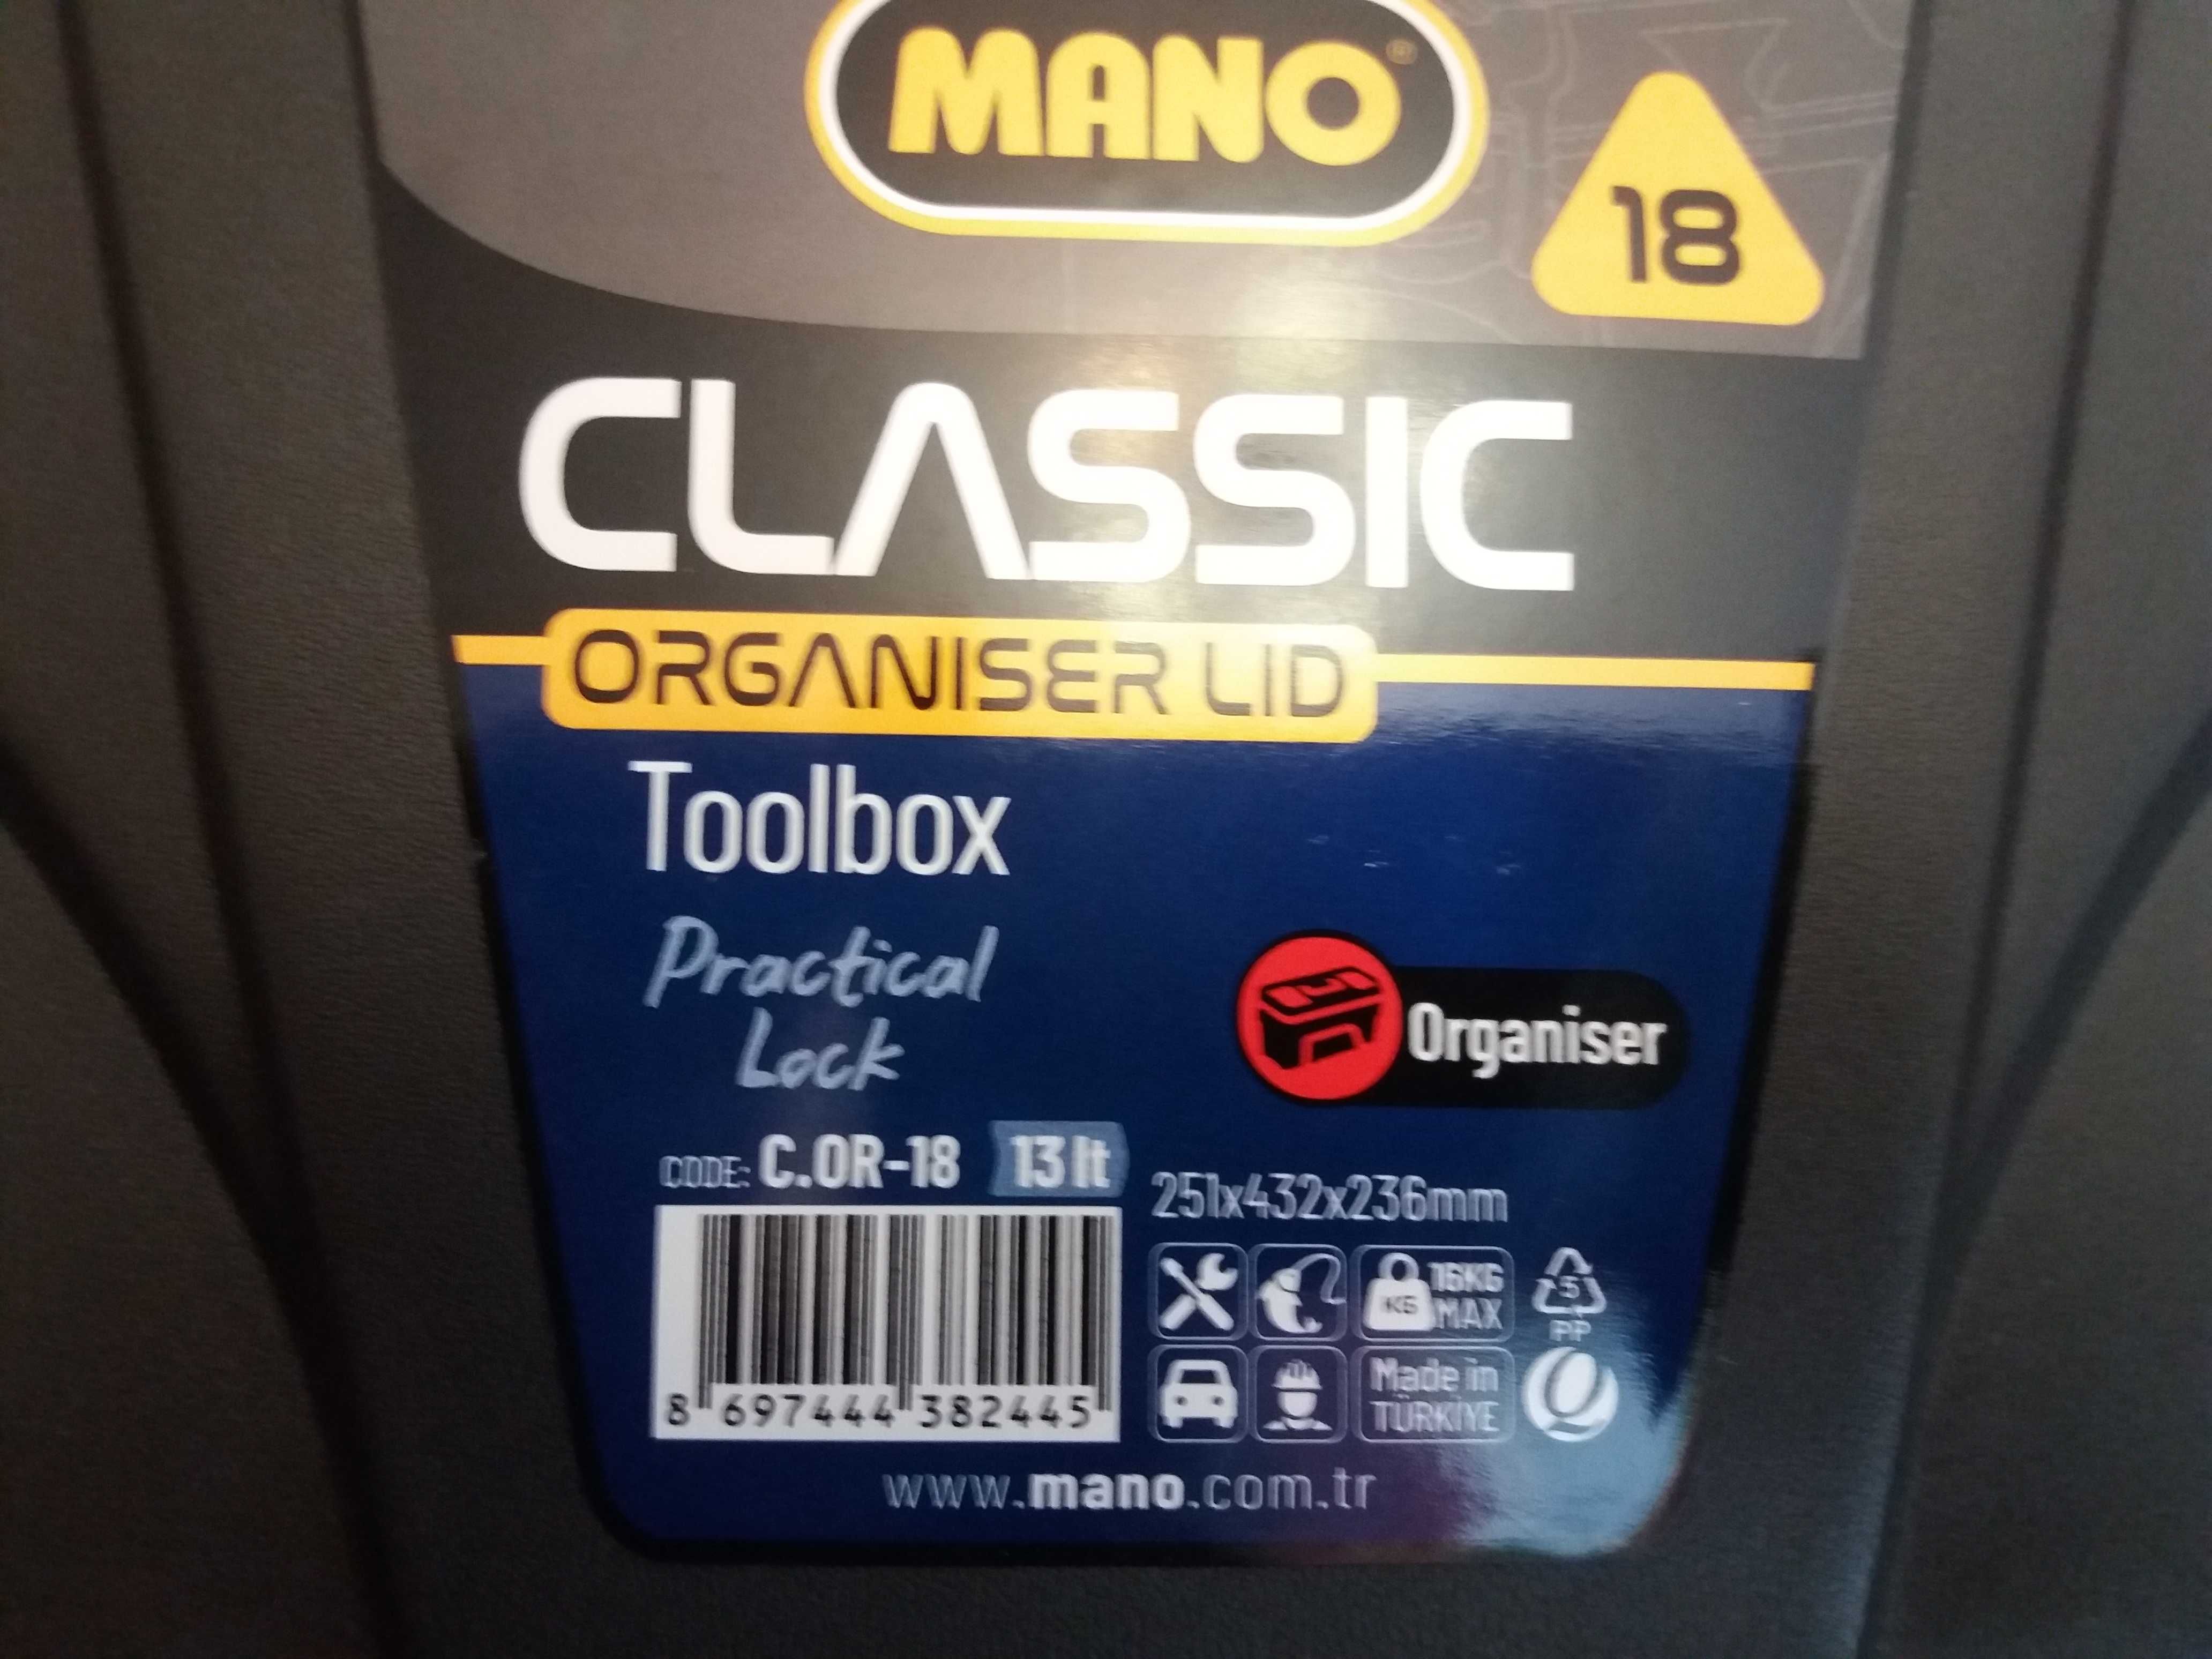 Ящик для инструментов MANO 18 новый